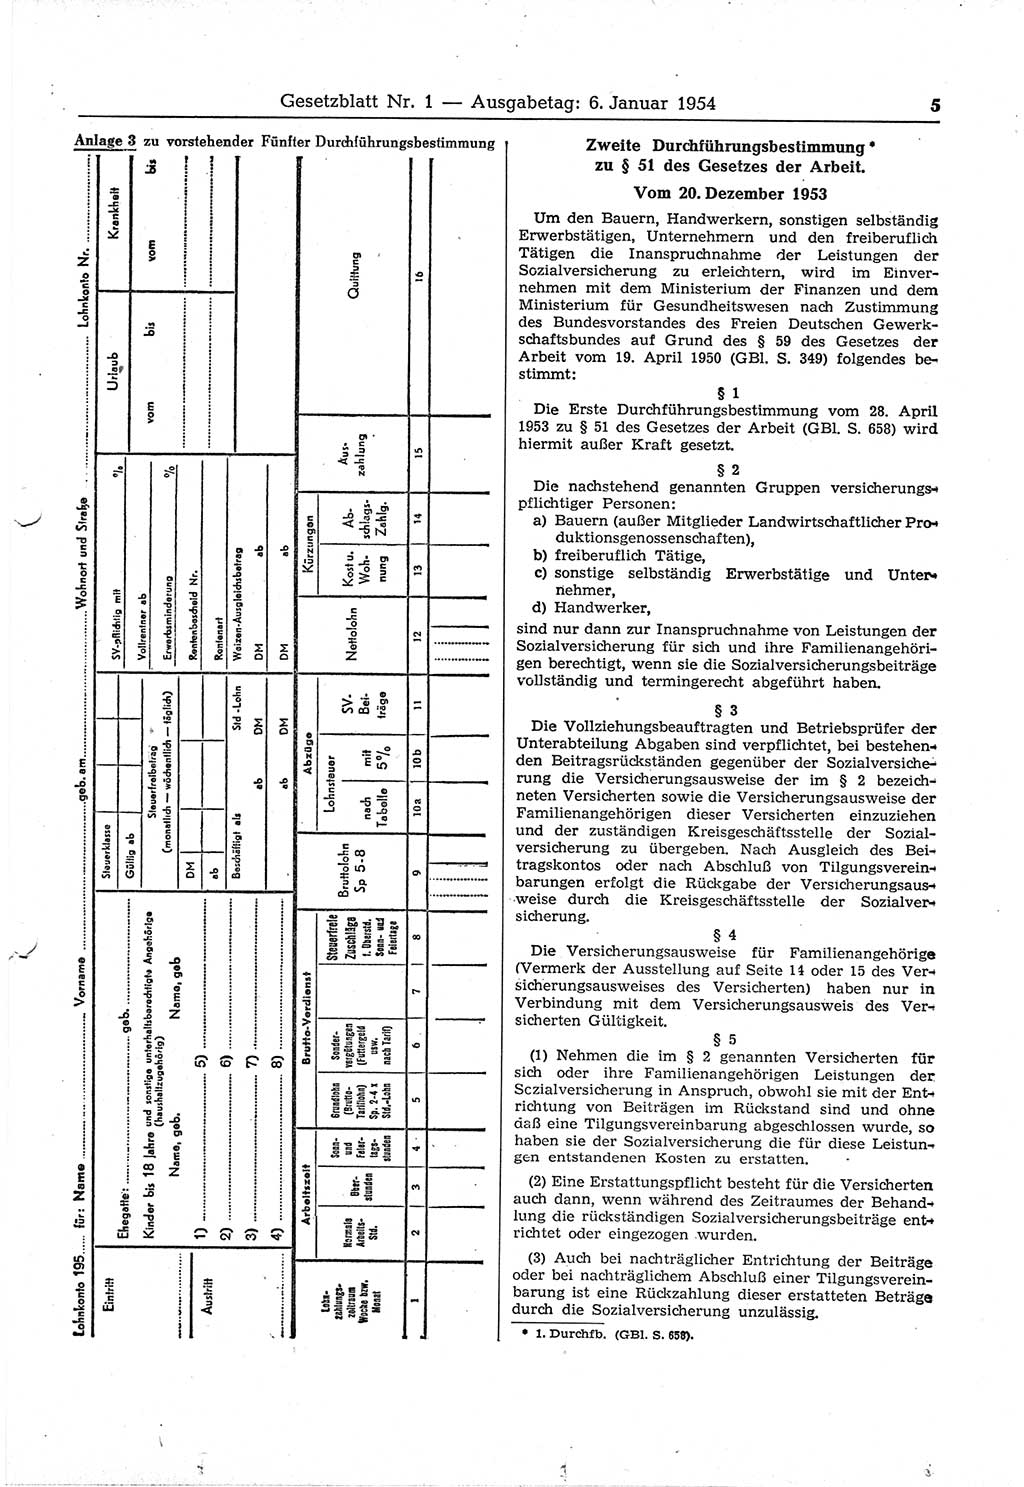 Gesetzblatt (GBl.) der Deutschen Demokratischen Republik (DDR) 1954, Seite 5 (GBl. DDR 1954, S. 5)